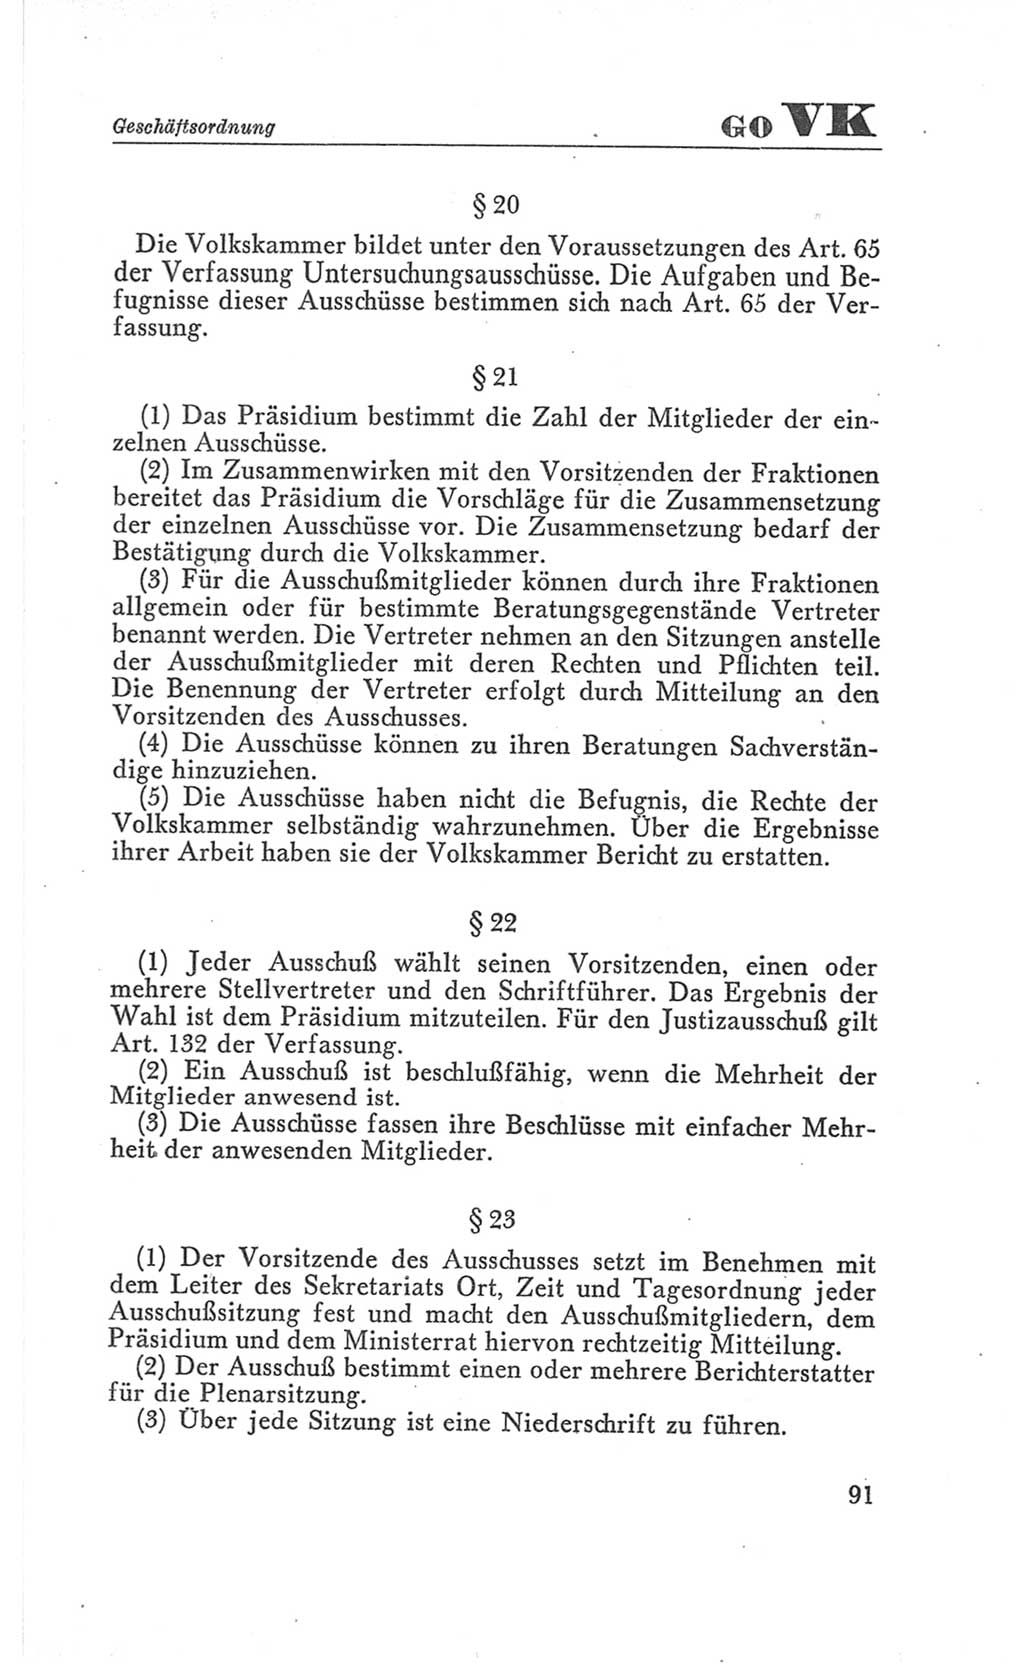 Handbuch der Volkskammer (VK) der Deutschen Demokratischen Republik (DDR), 3. Wahlperiode 1958-1963, Seite 91 (Hdb. VK. DDR 3. WP. 1958-1963, S. 91)